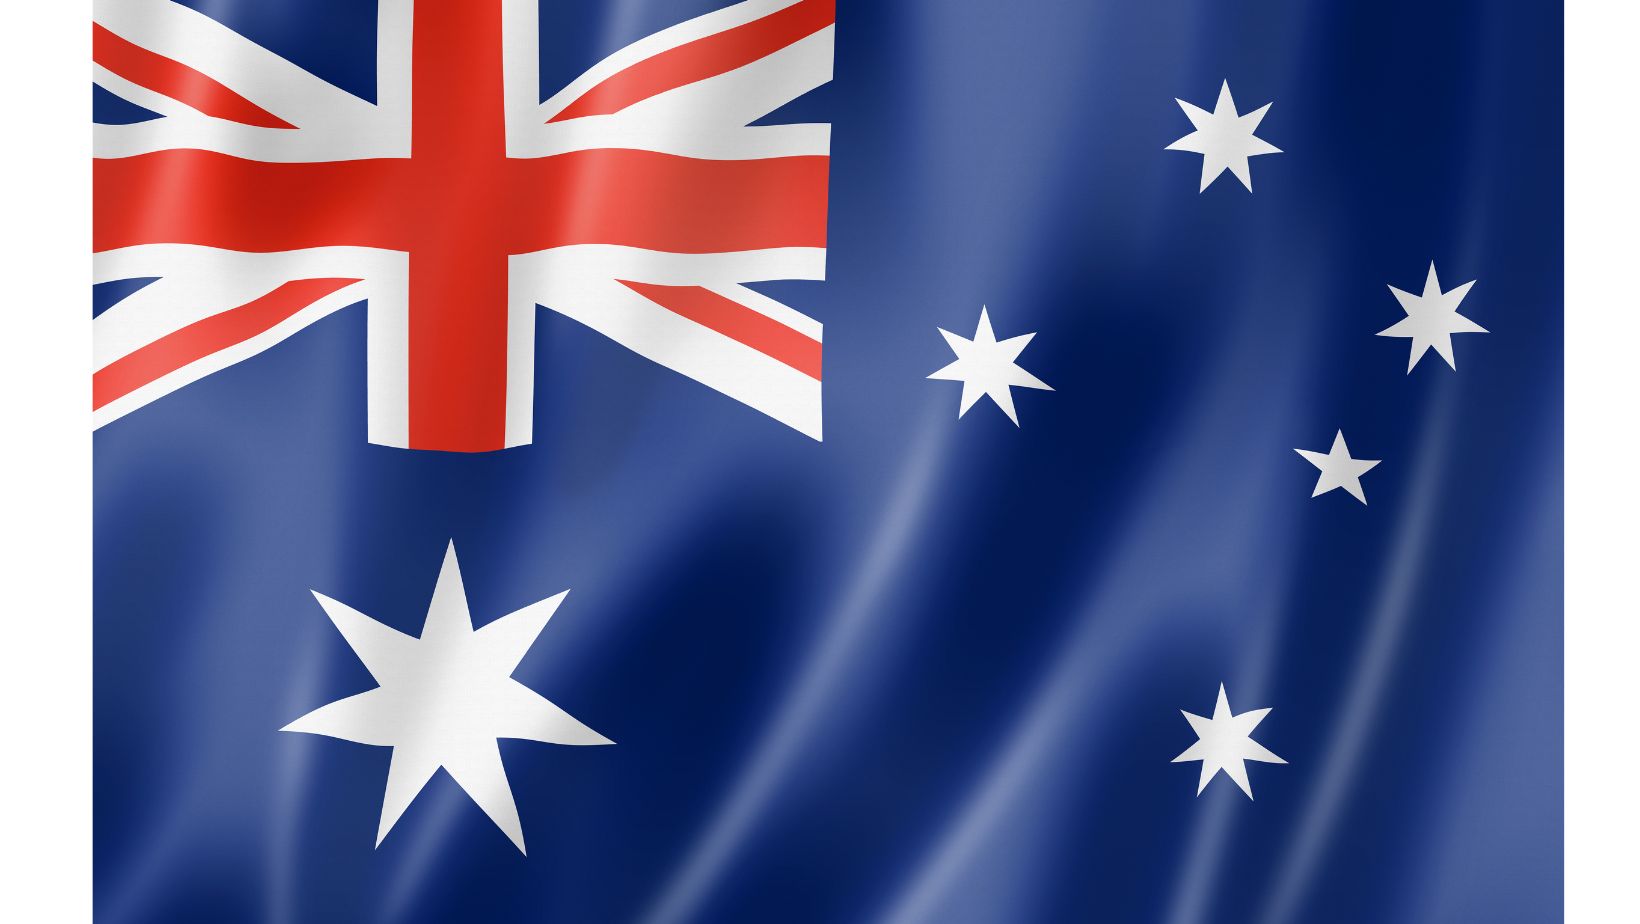 ऑस्ट्रेलियाई झंडा: नीले रंग की पृष्ठभूमि पर सफेद सितारे और लाल और सफेद क्रॉस धारियां